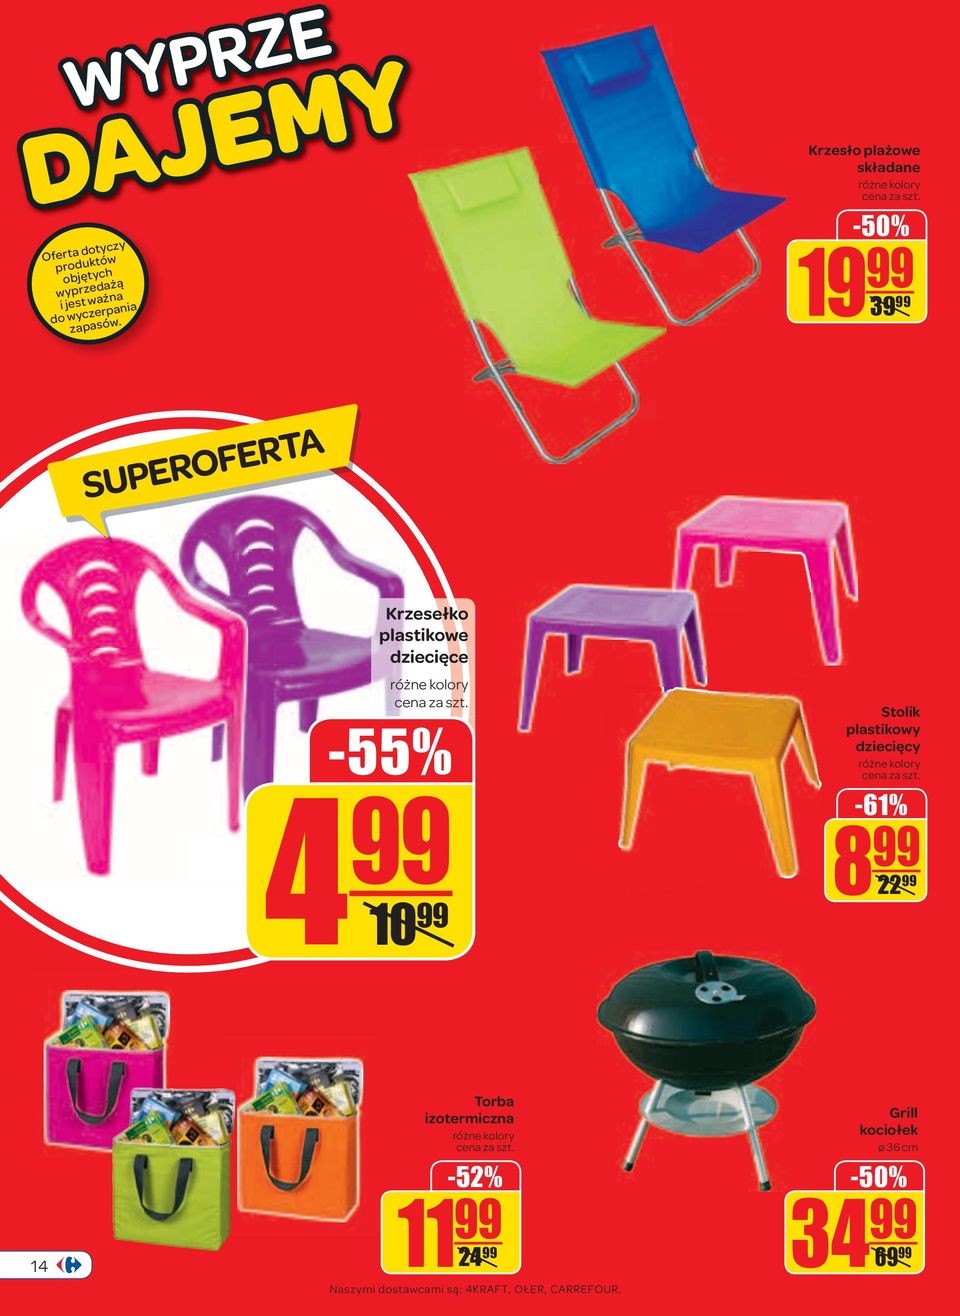 -50% 19 99 39 99 Krzesełko plastikowe dziecięce różne kolory cena za szt.